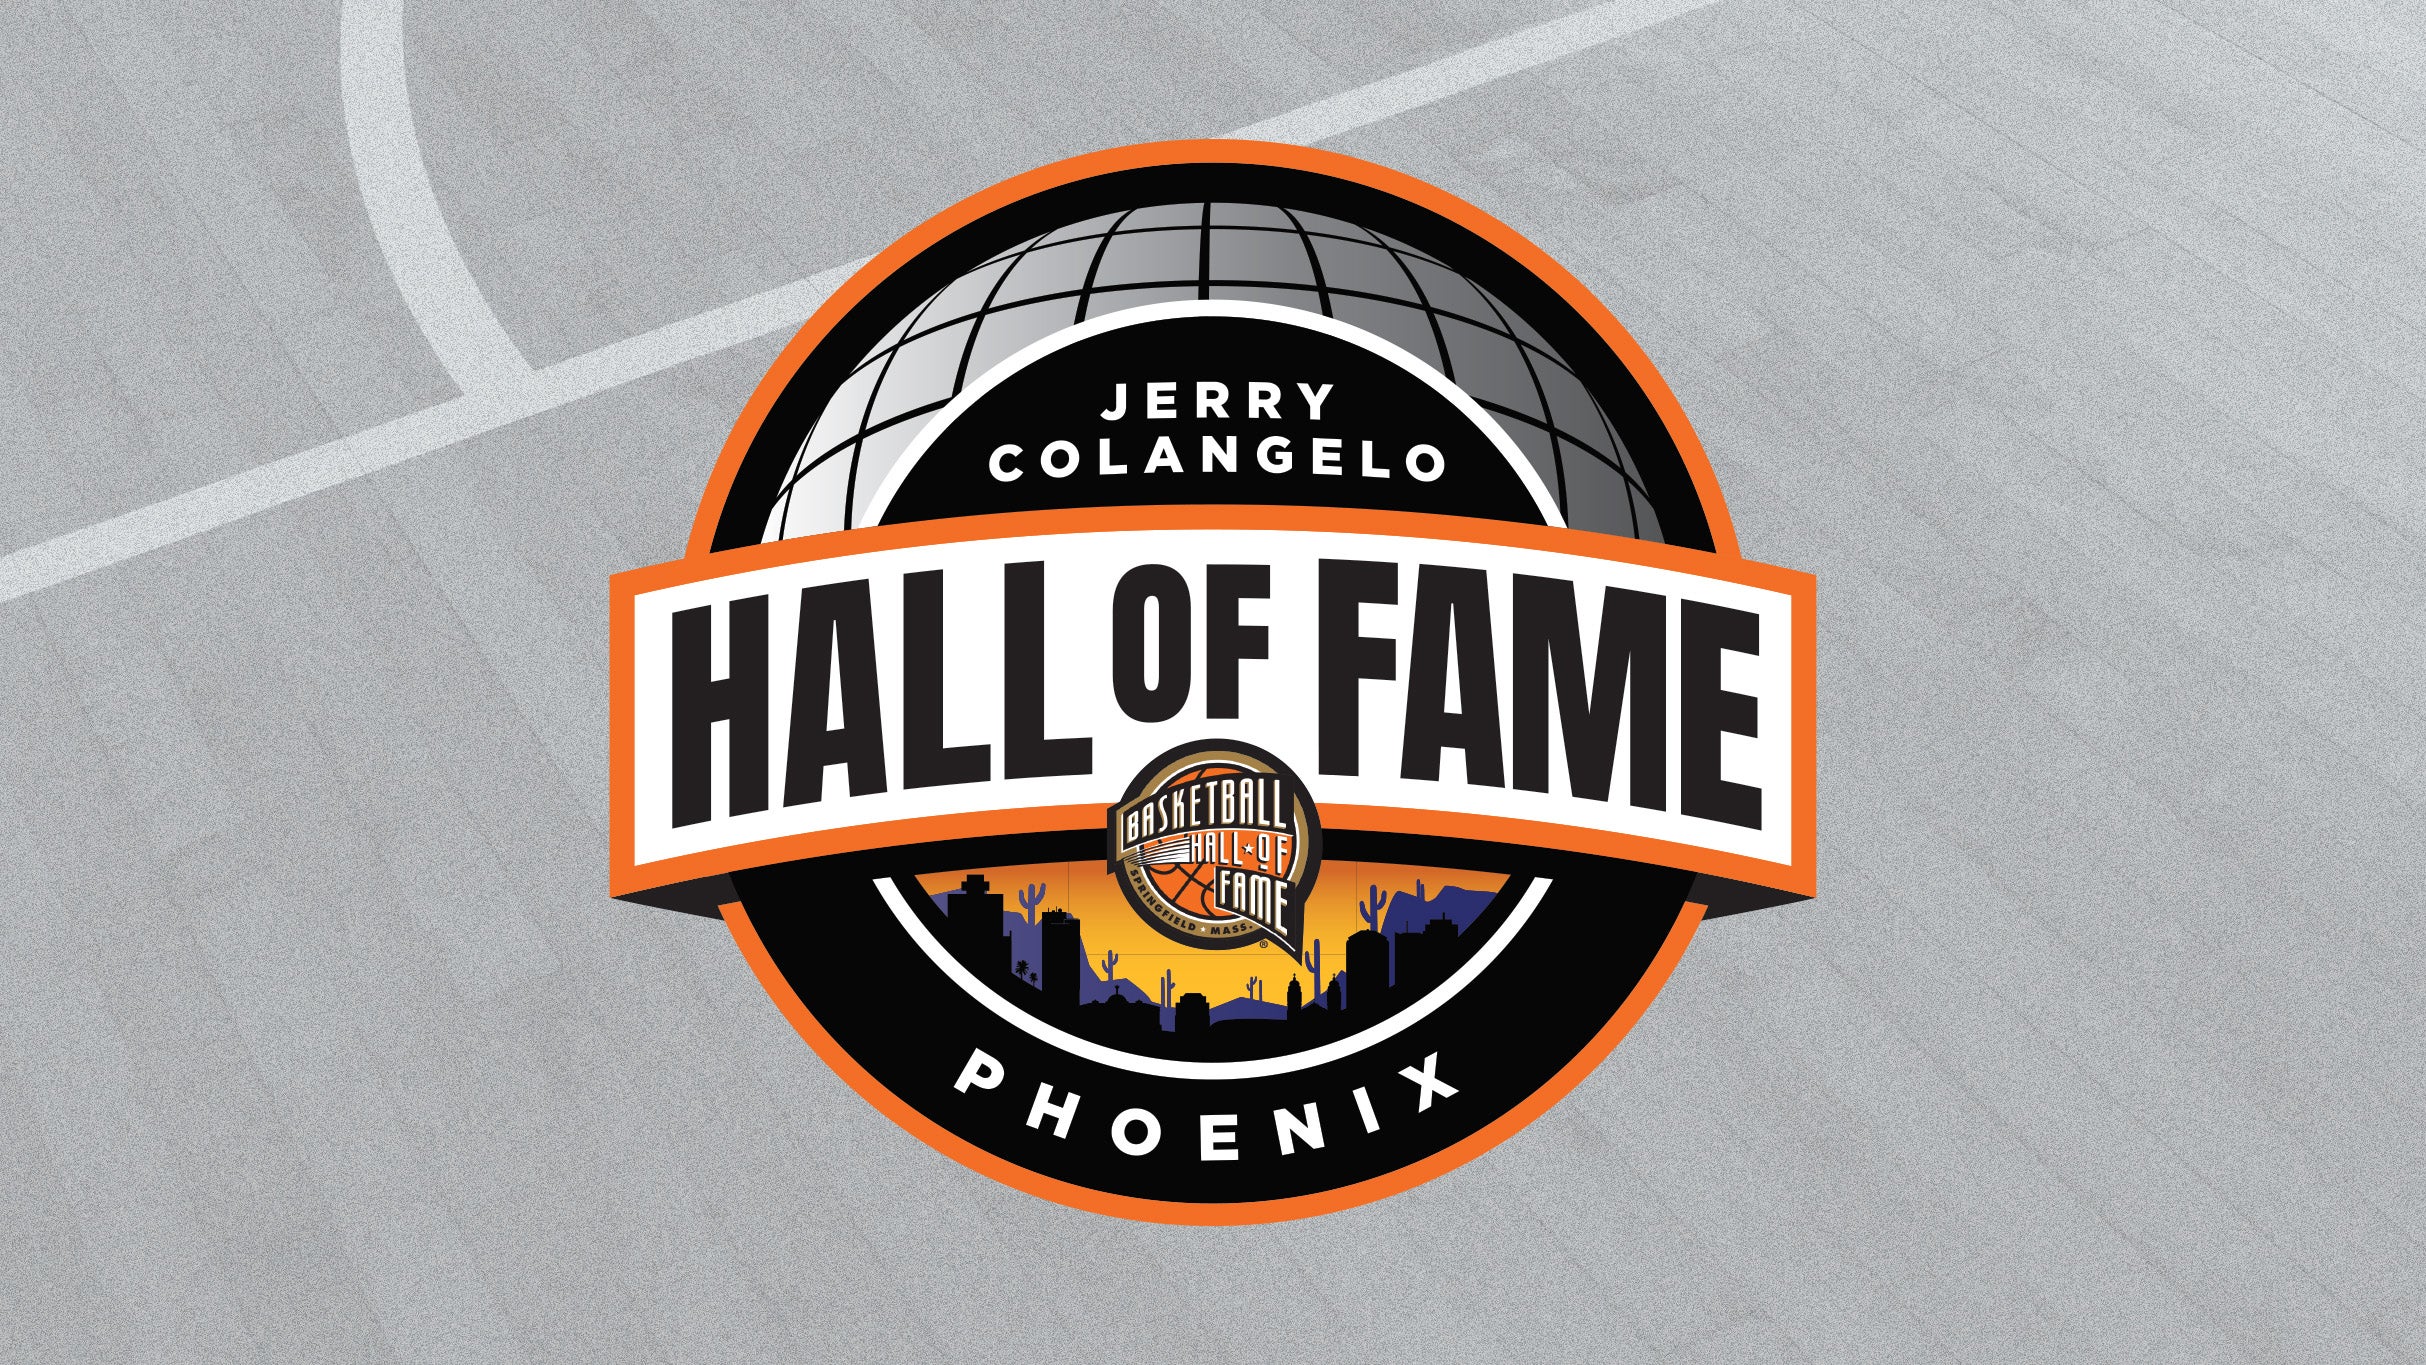 Jerry Colangelo's Hall of Fame - Phoenix - Men's NCAA pre-sale code